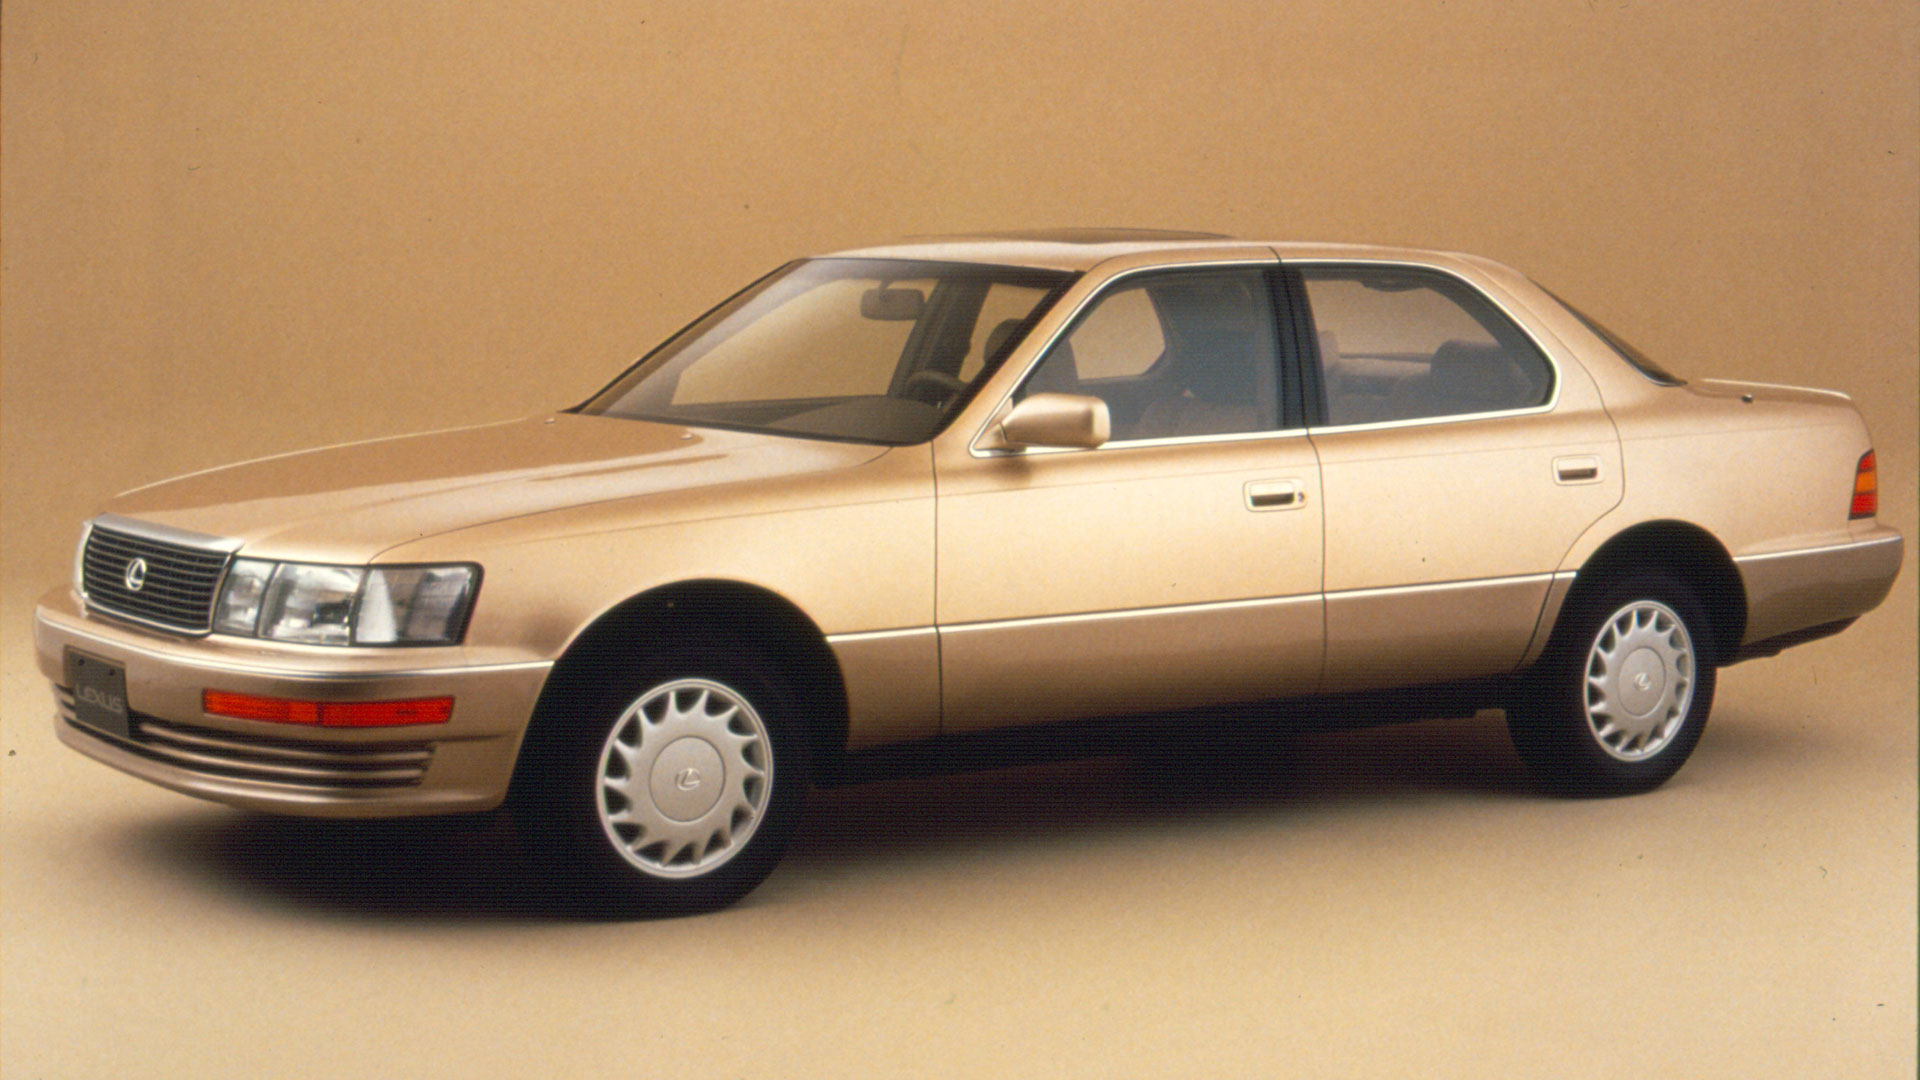 30 years of Lexus